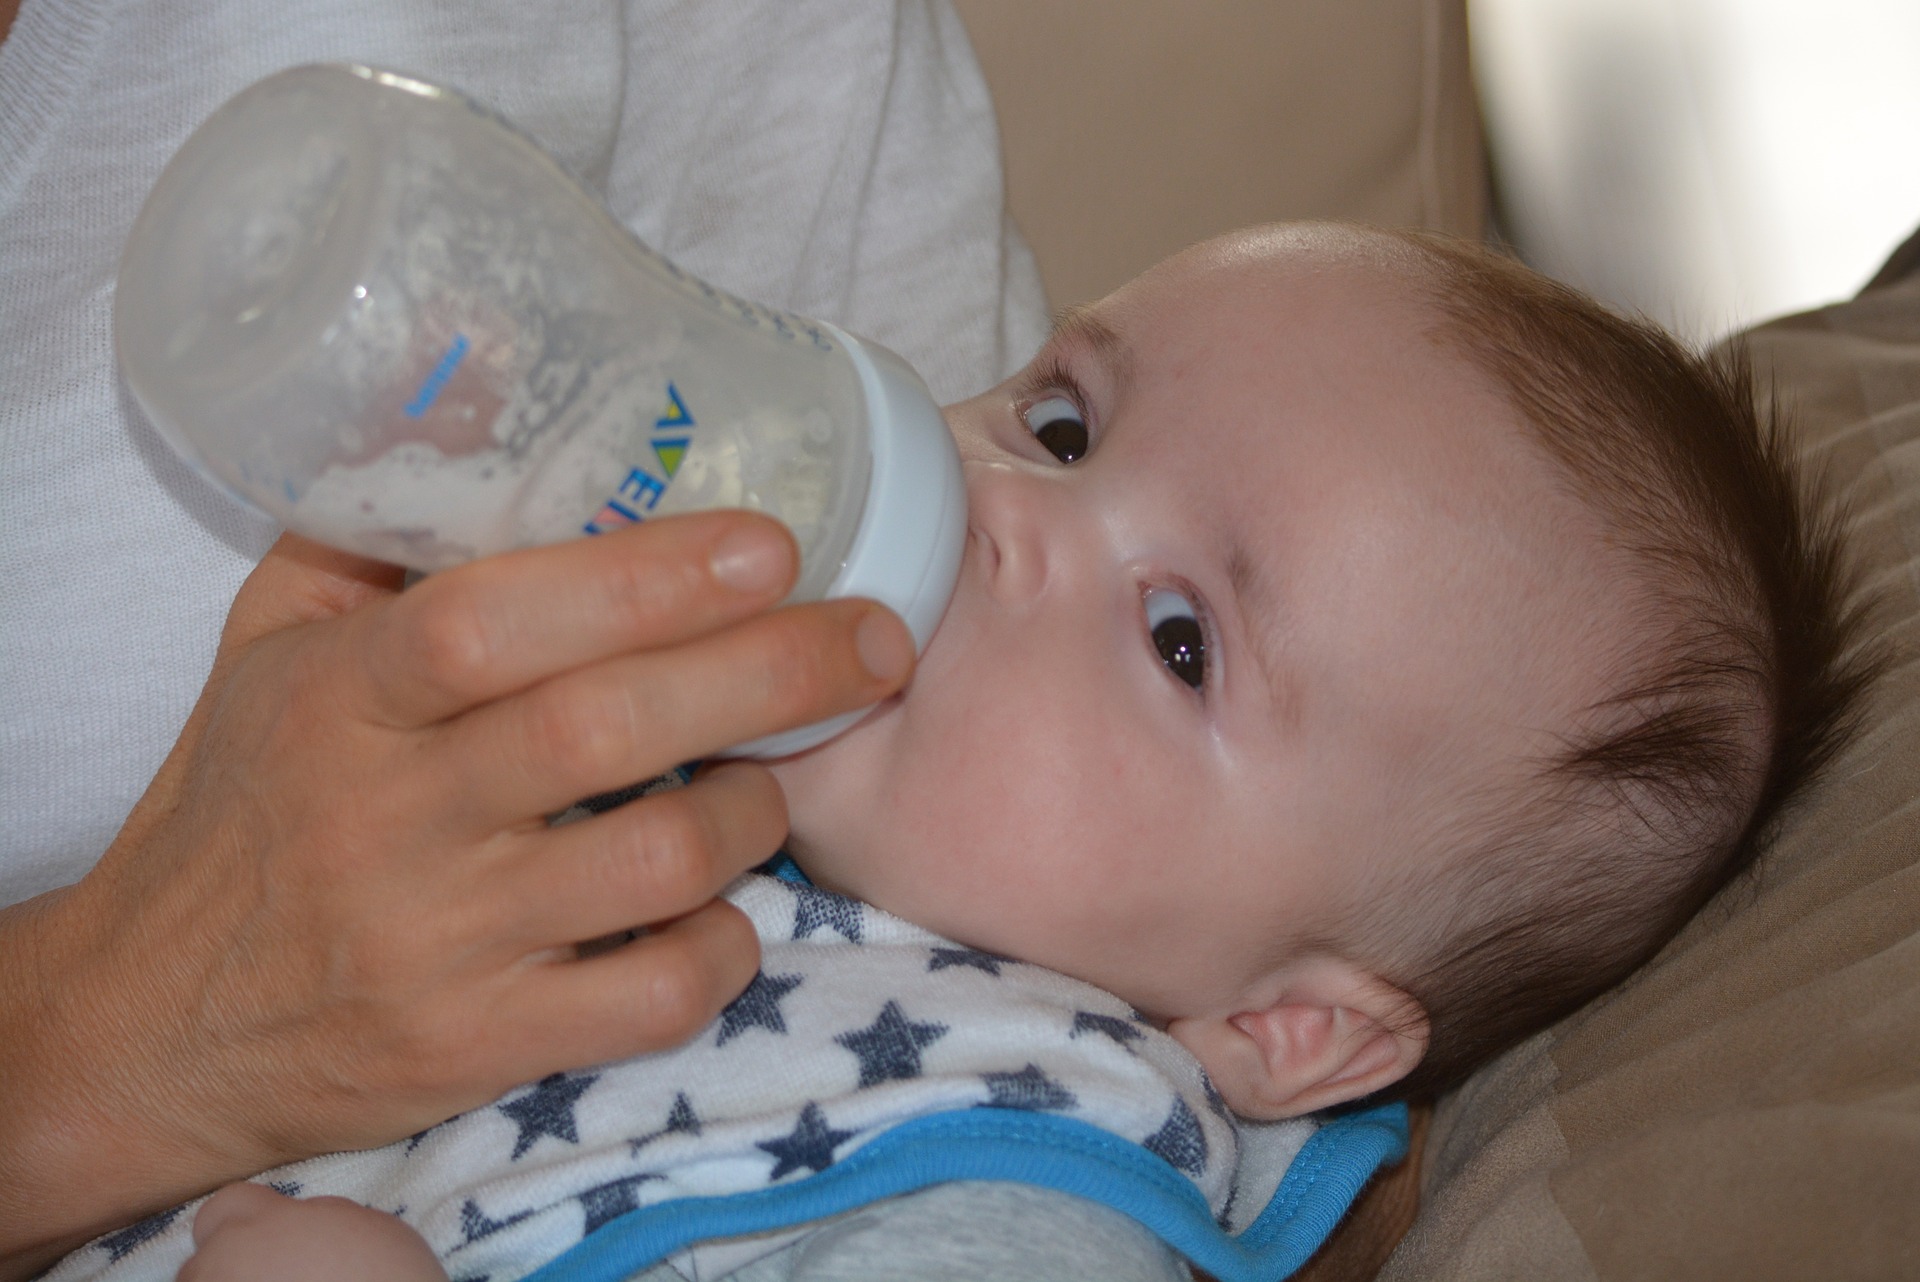 Consejos prácticos si alimentas con al bebé con mamadera